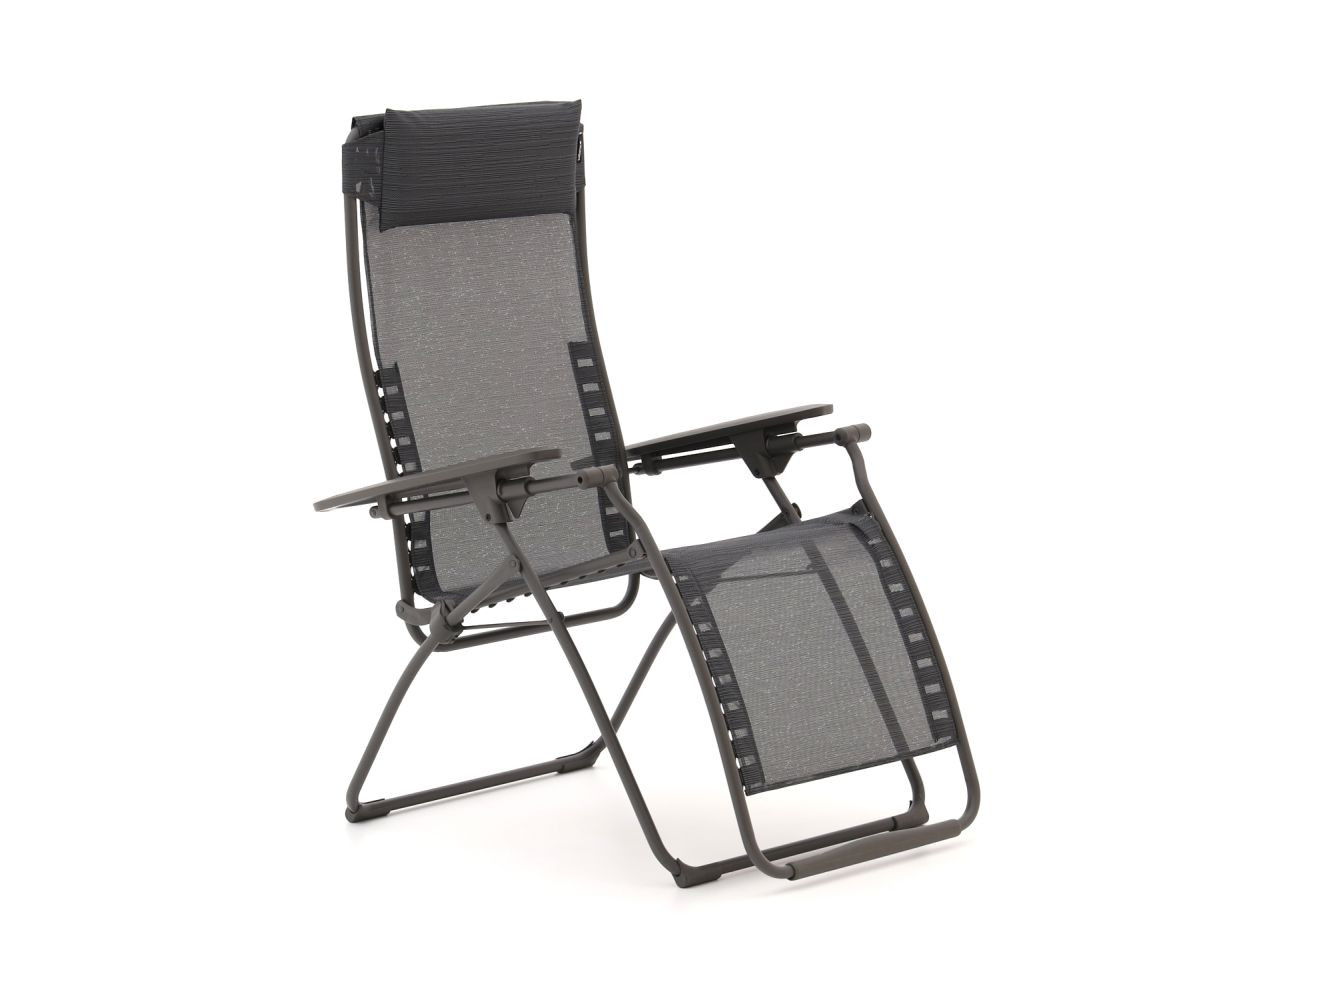 Lafuma Futura Clippe relaxstoel - Laagste prijsgarantie!